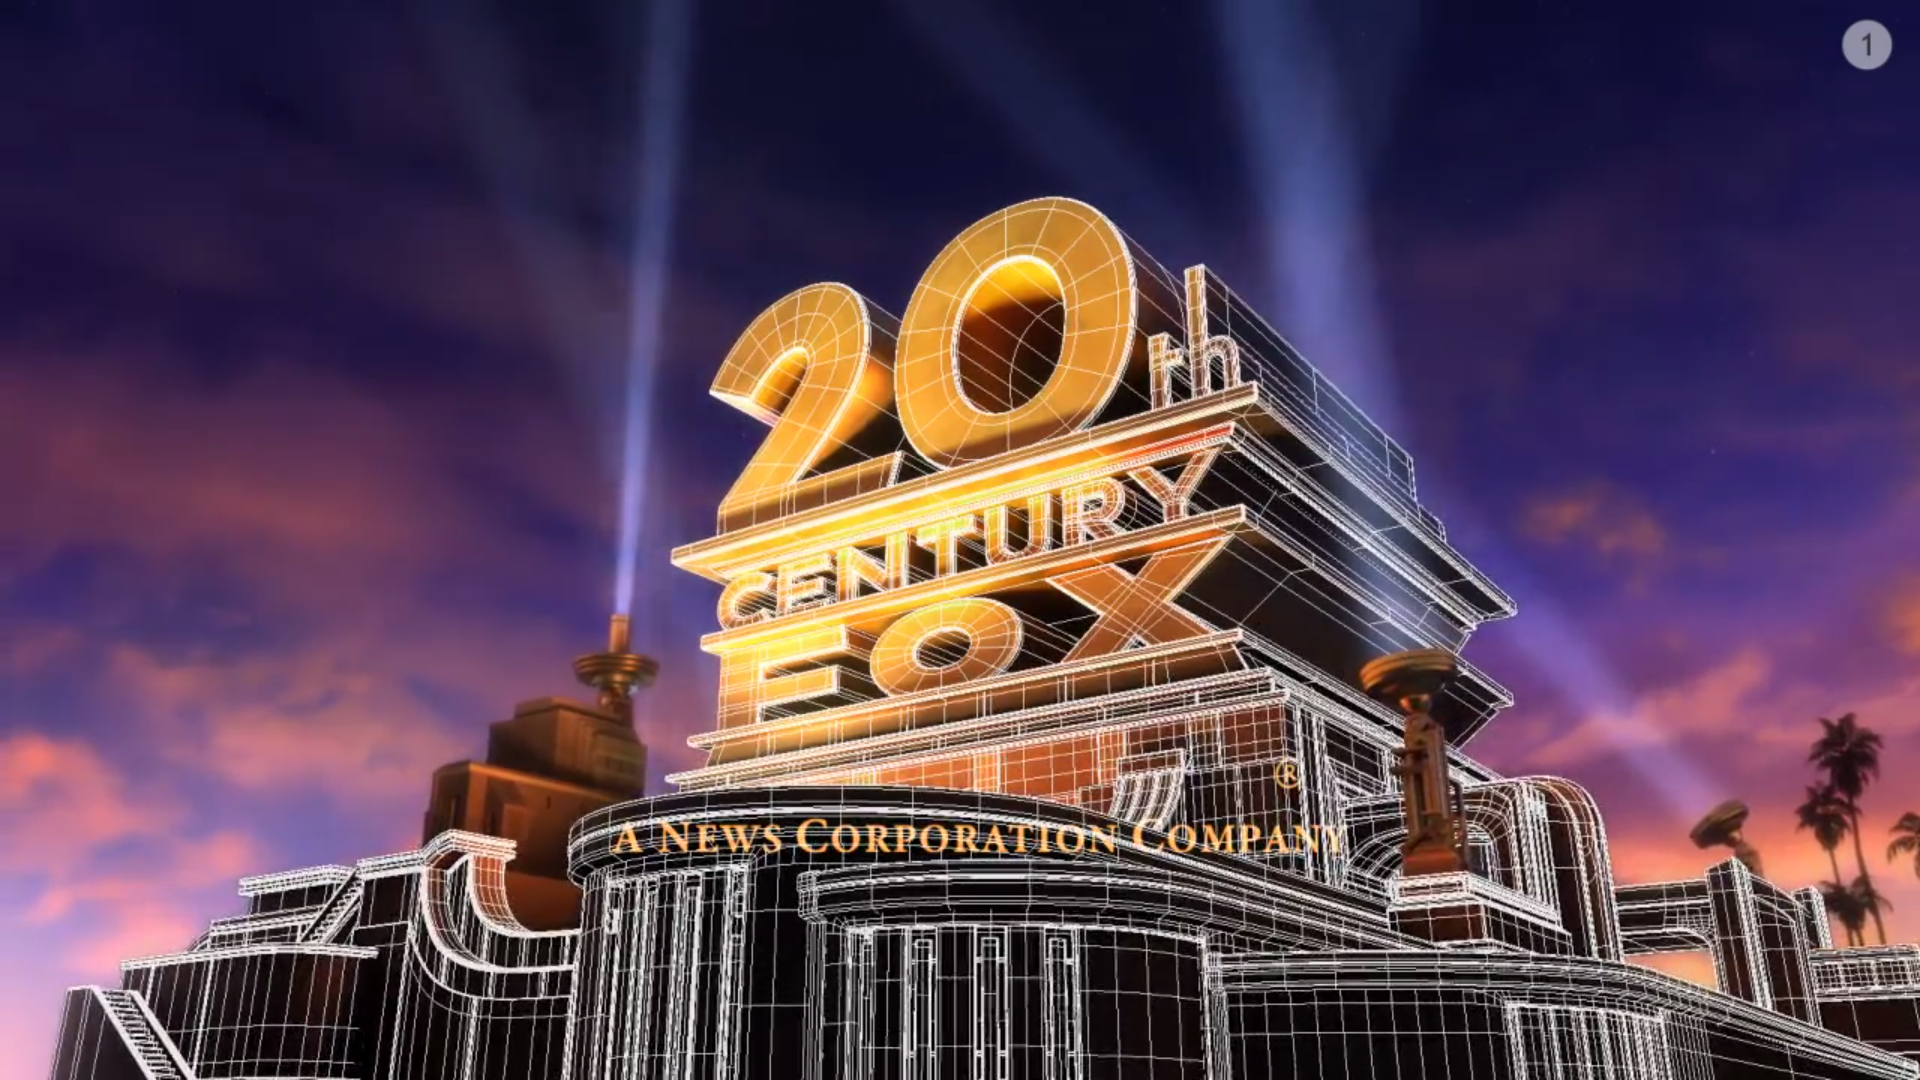 20тн Центури Фокс. Студия 20 век Фокс в Лос Анджелесе. 20 Век Центури Фокс. 20th Century Fox 2009.